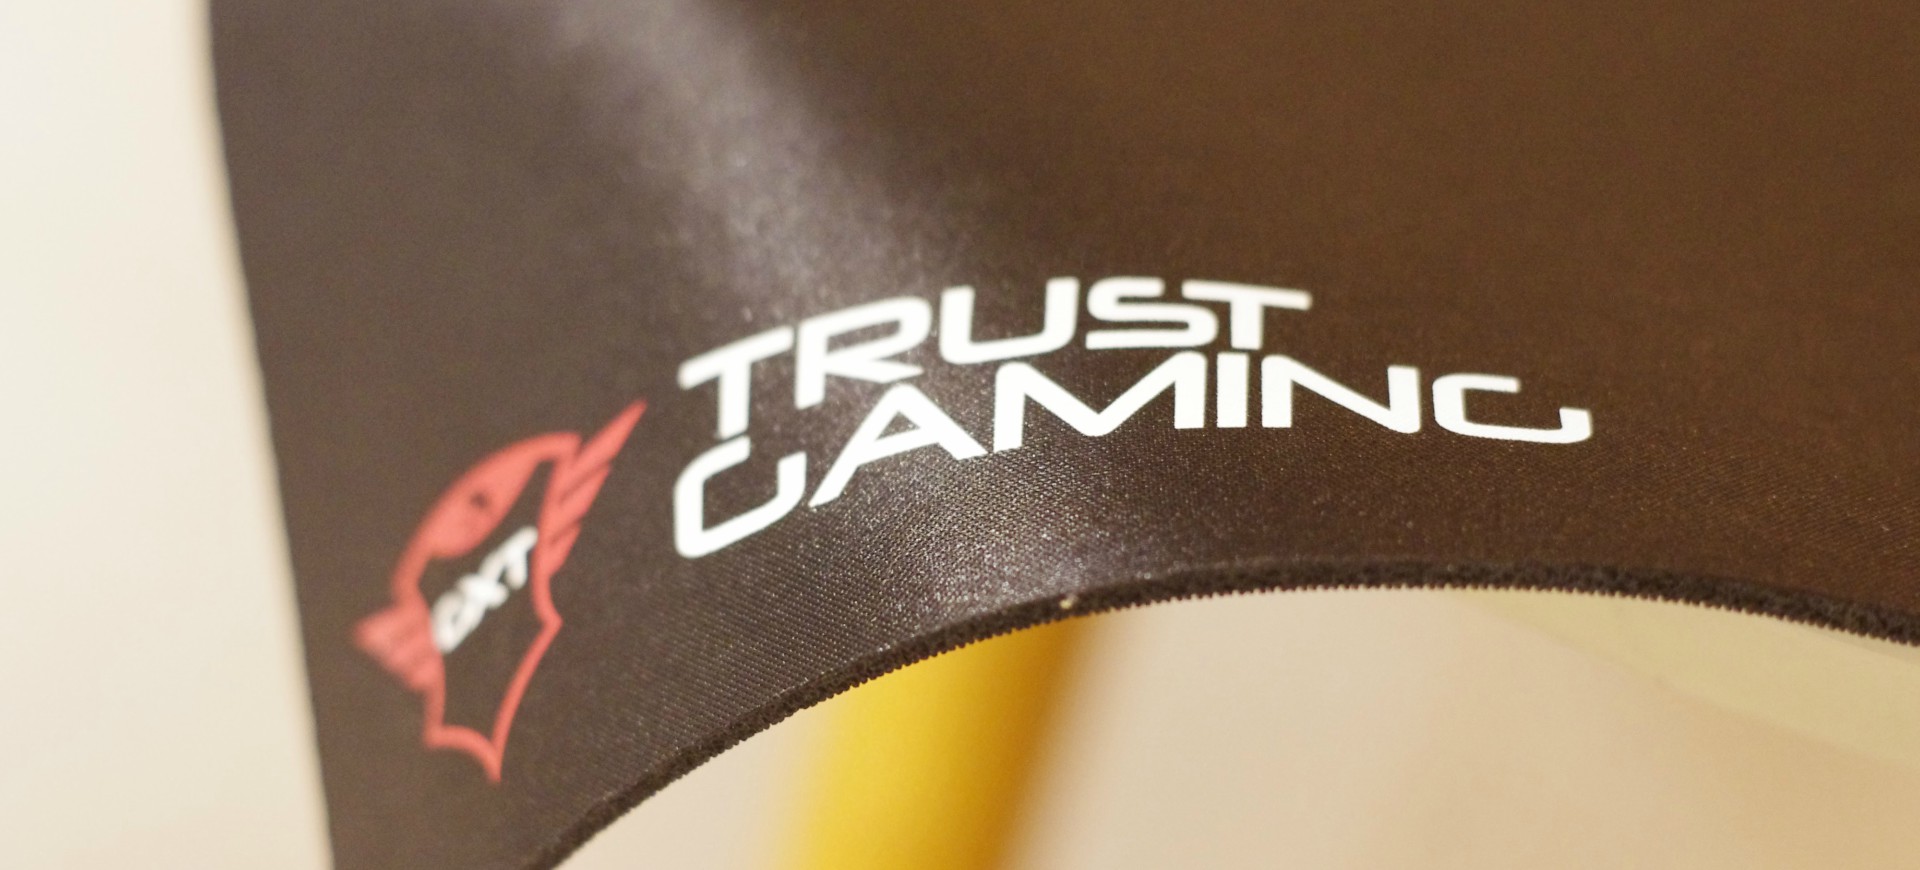 Trust Gaming GXT 754 – Đủ “chất” để đồng hành cùng game thủ